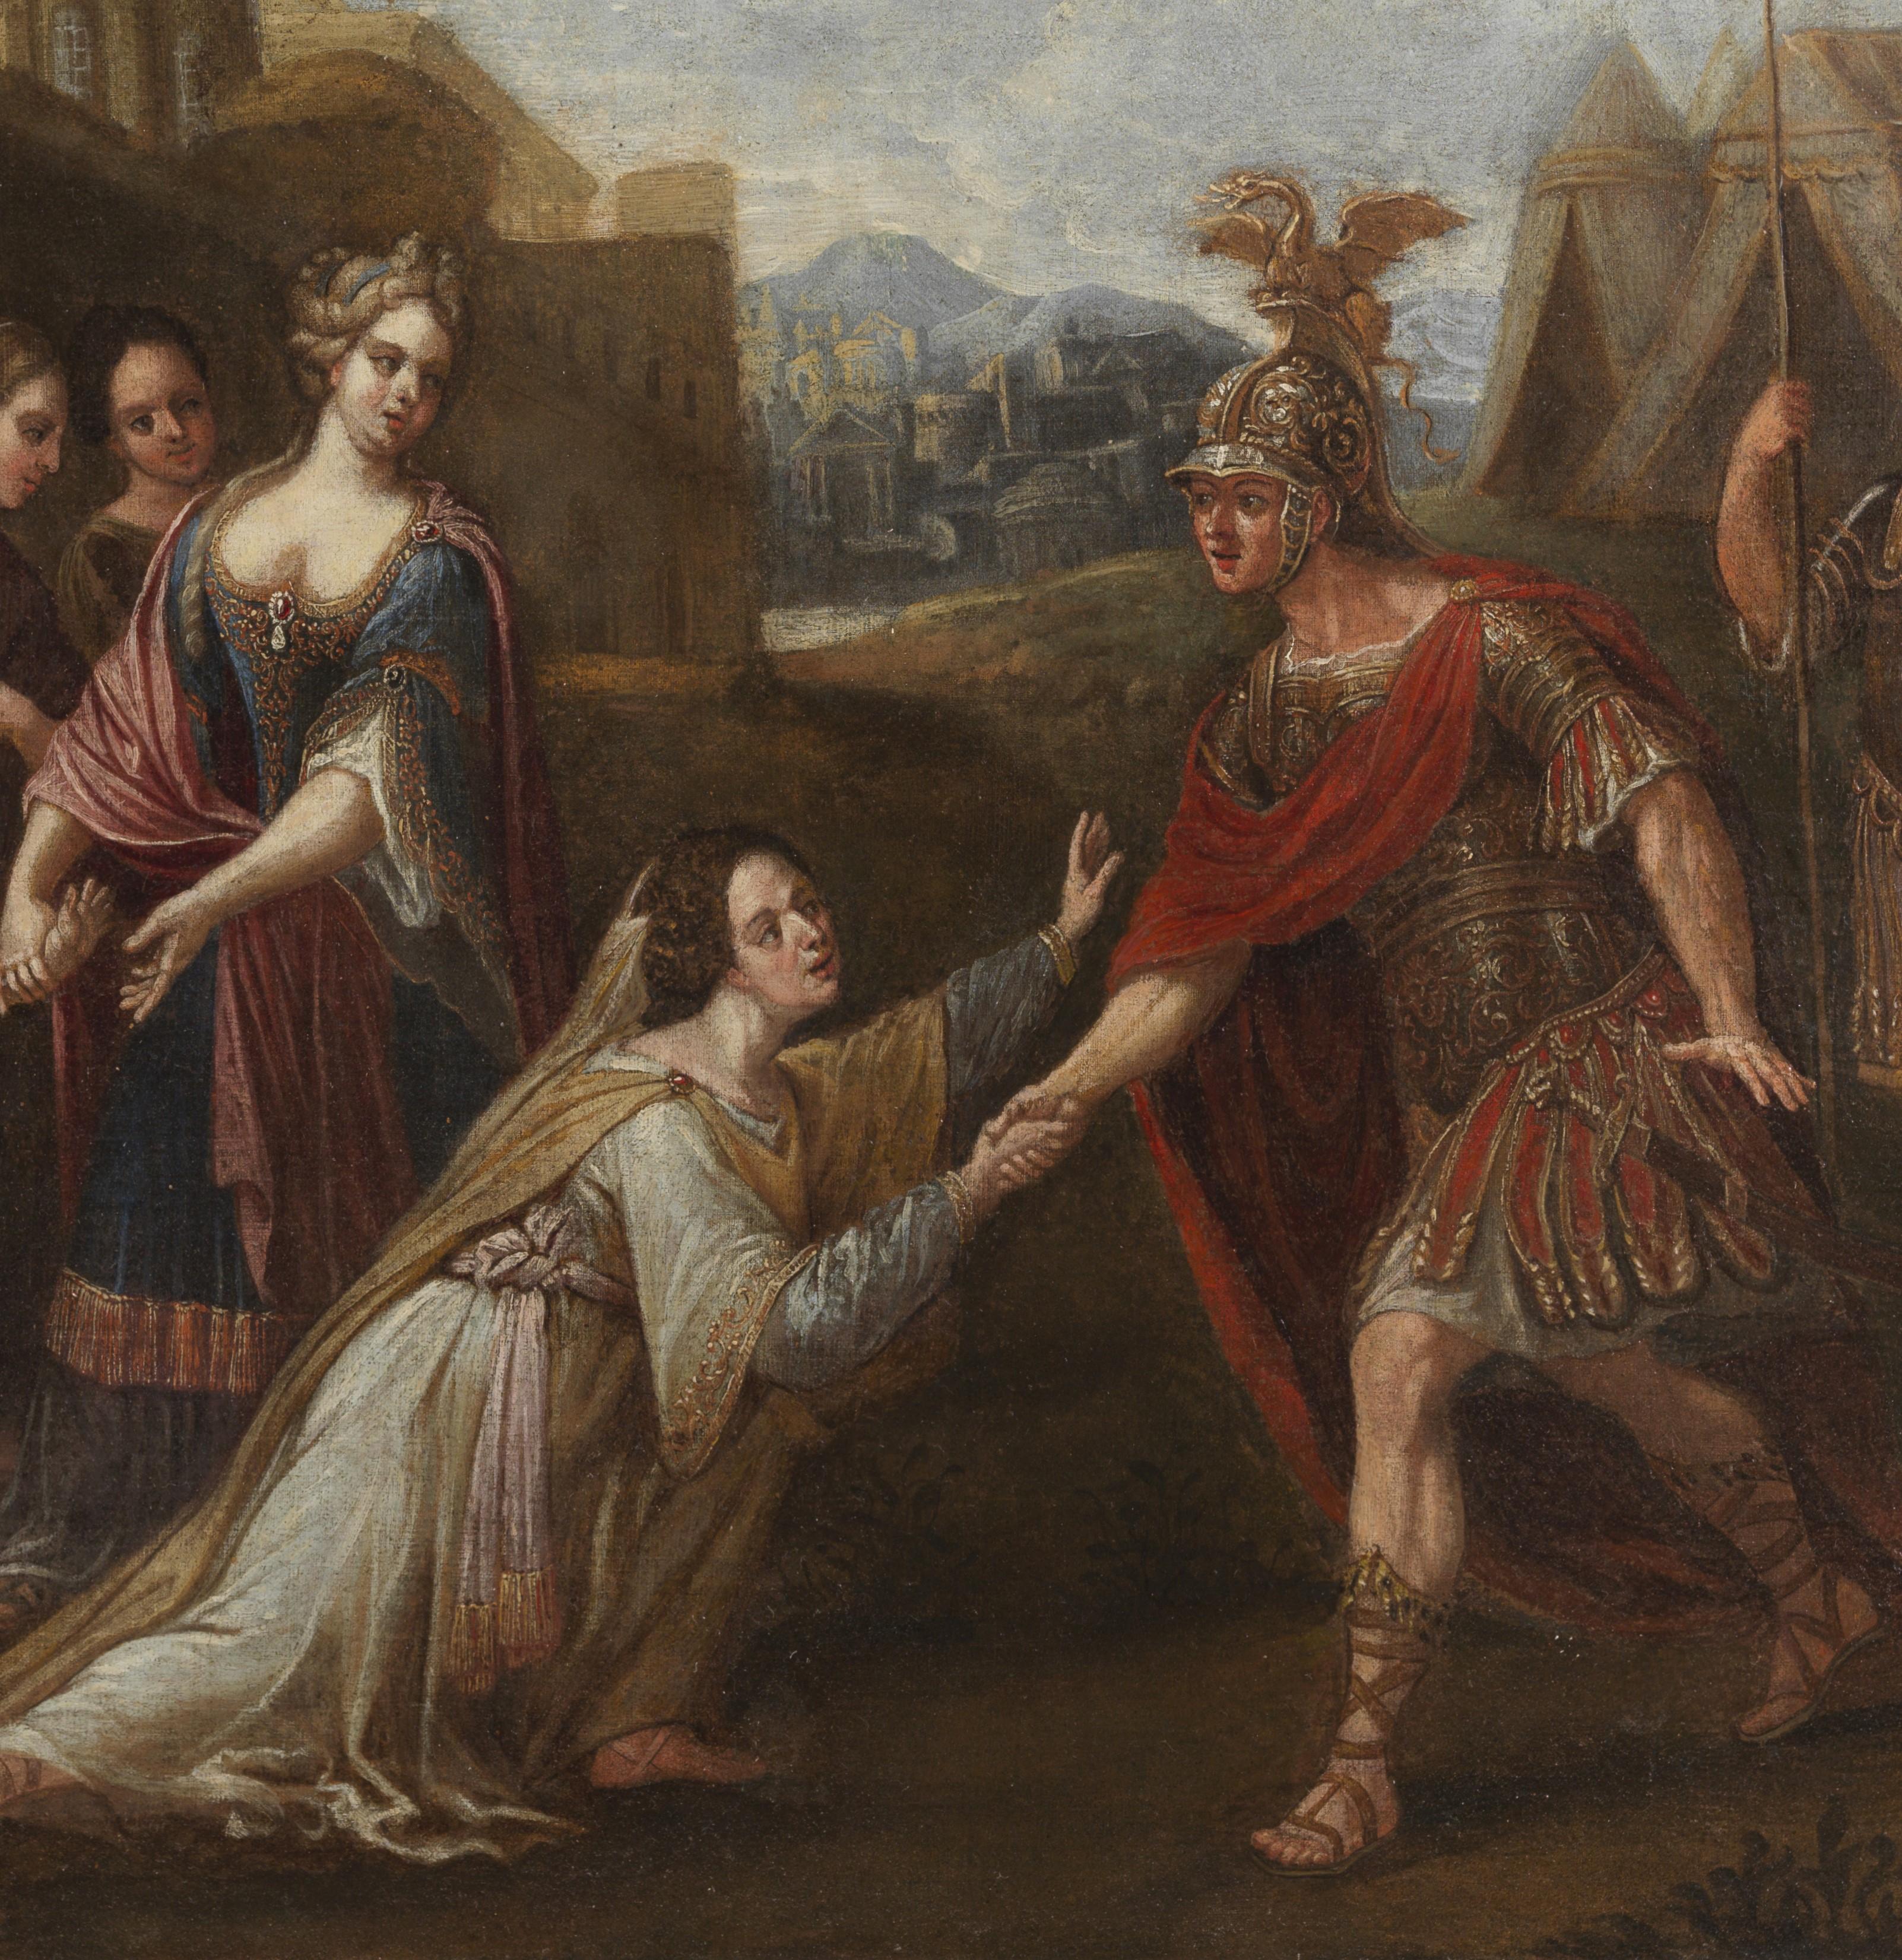 Gemälde Öl auf Leinwand, 78 x 110 ungerahmt und 97 x 122 cm mit zeitgenössischem Rahmen, das die Familie des Darius mit Alexander dem Großen darstellt, aus der römischen Schule der zweiten Hälfte des 17. Jahrhunderts.

Die Geschichte erzählt uns,